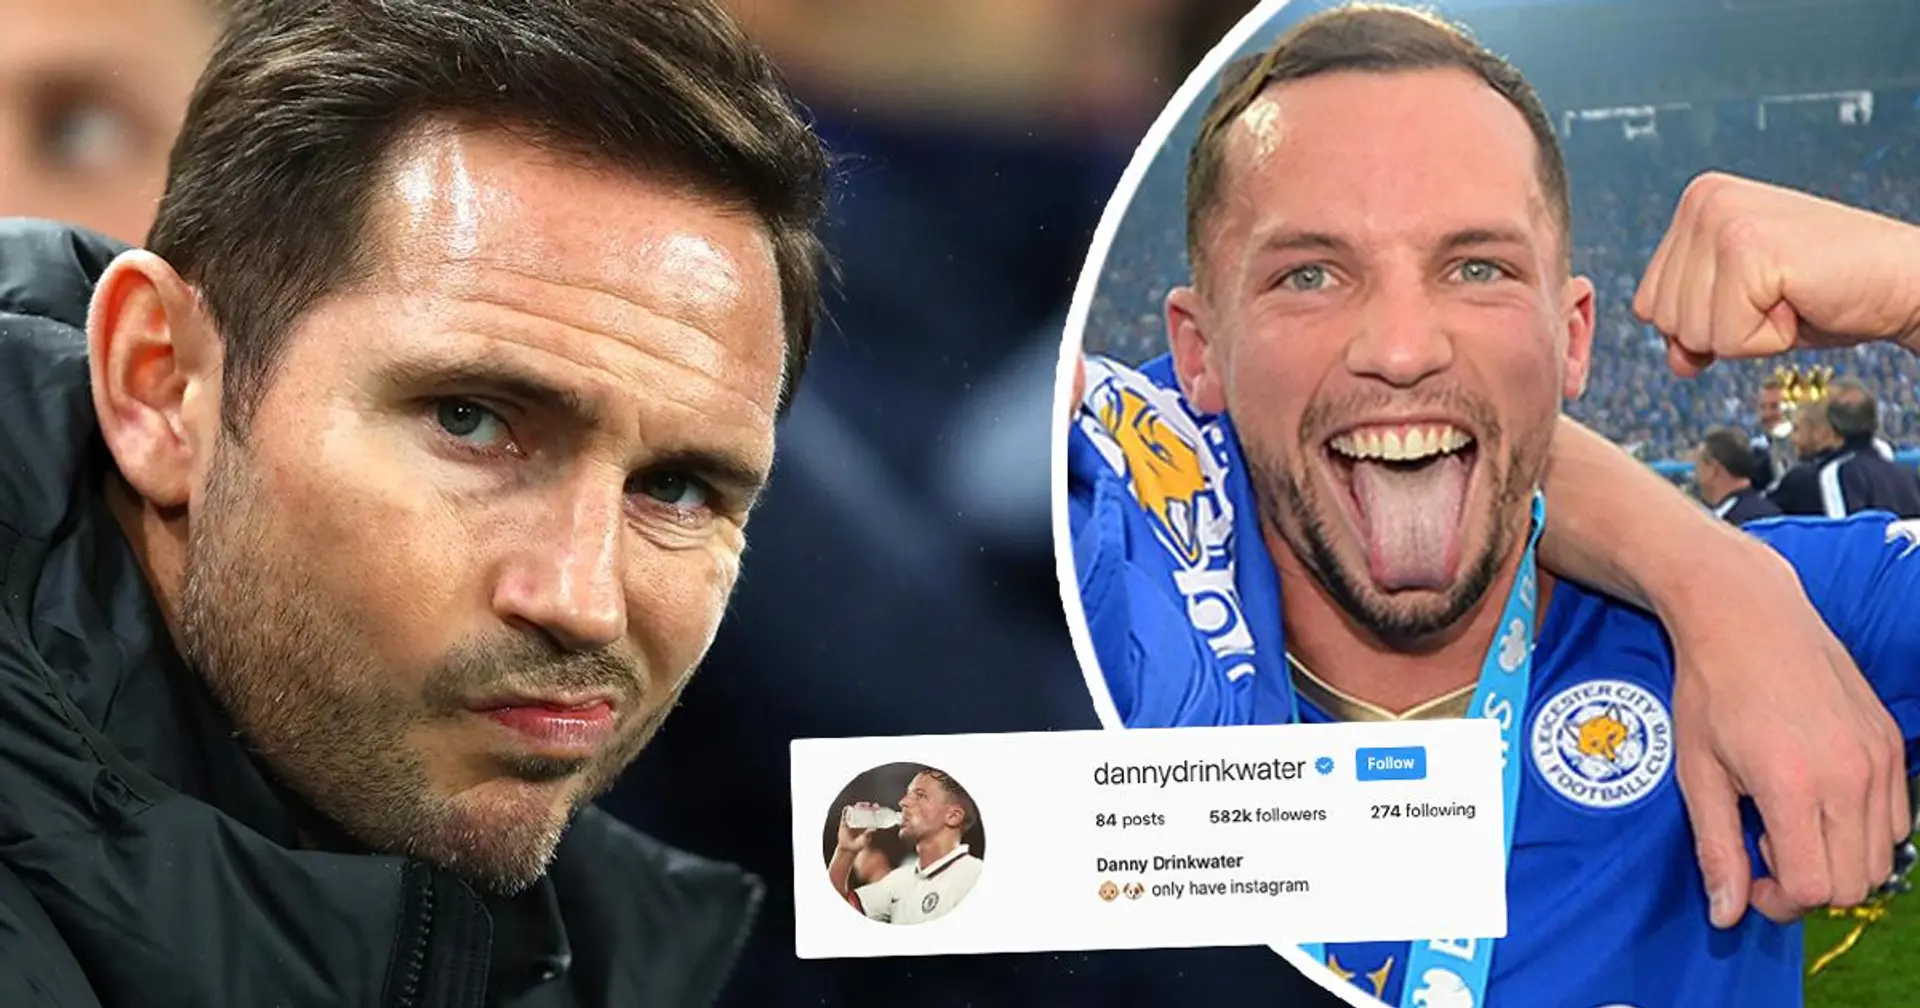 'Esa fue una reacción extraña': Danny Drinkwater se disculpa por la publicación de Instagram minutos después del despido de Lampard